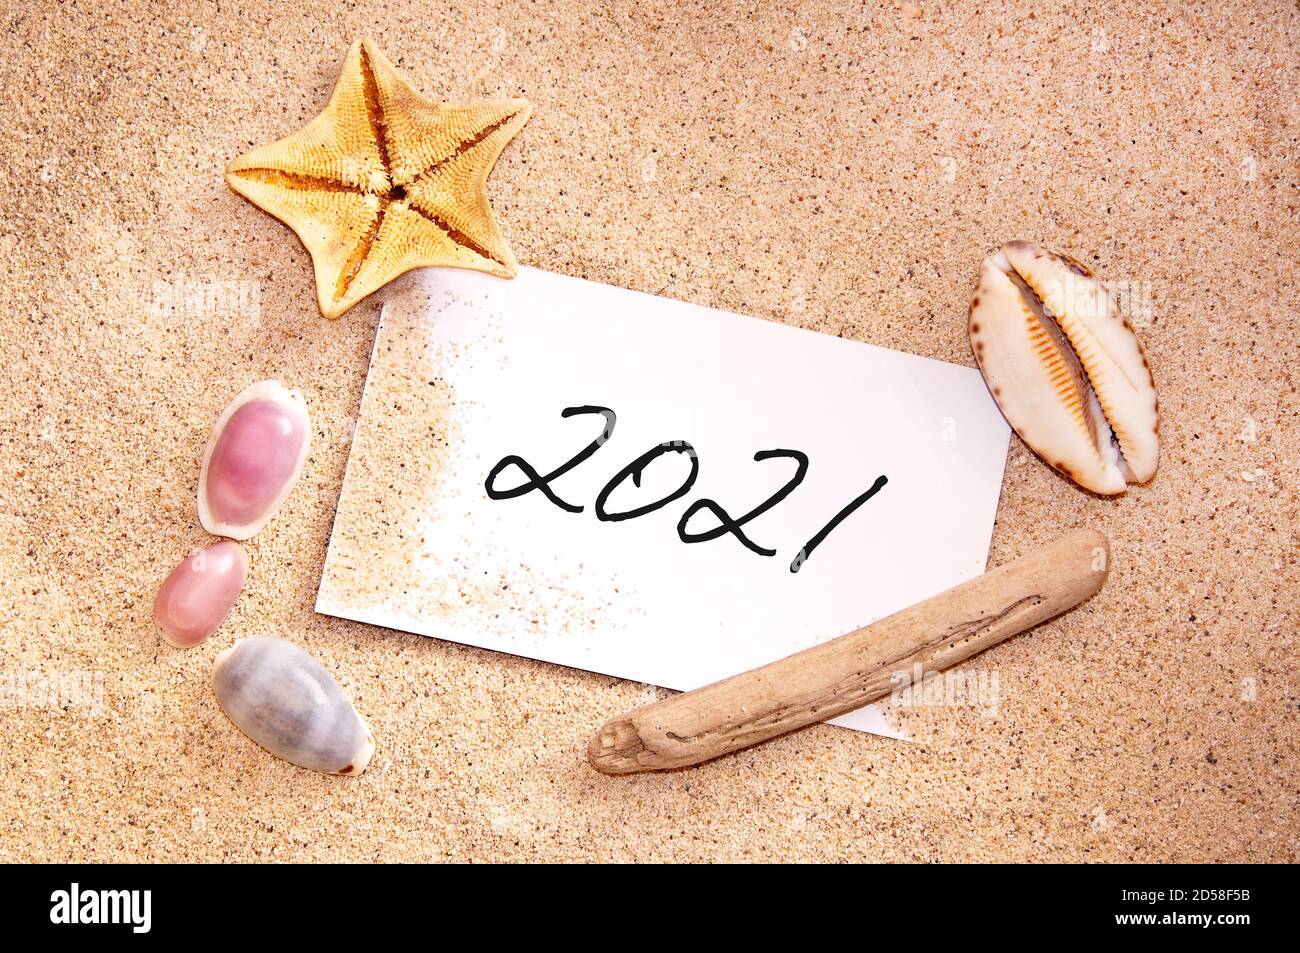 2021 escrito en una nota en la arena de una playa con conchas marinas, vacaciones tropicales, tarjeta de año nuevo Foto de stock